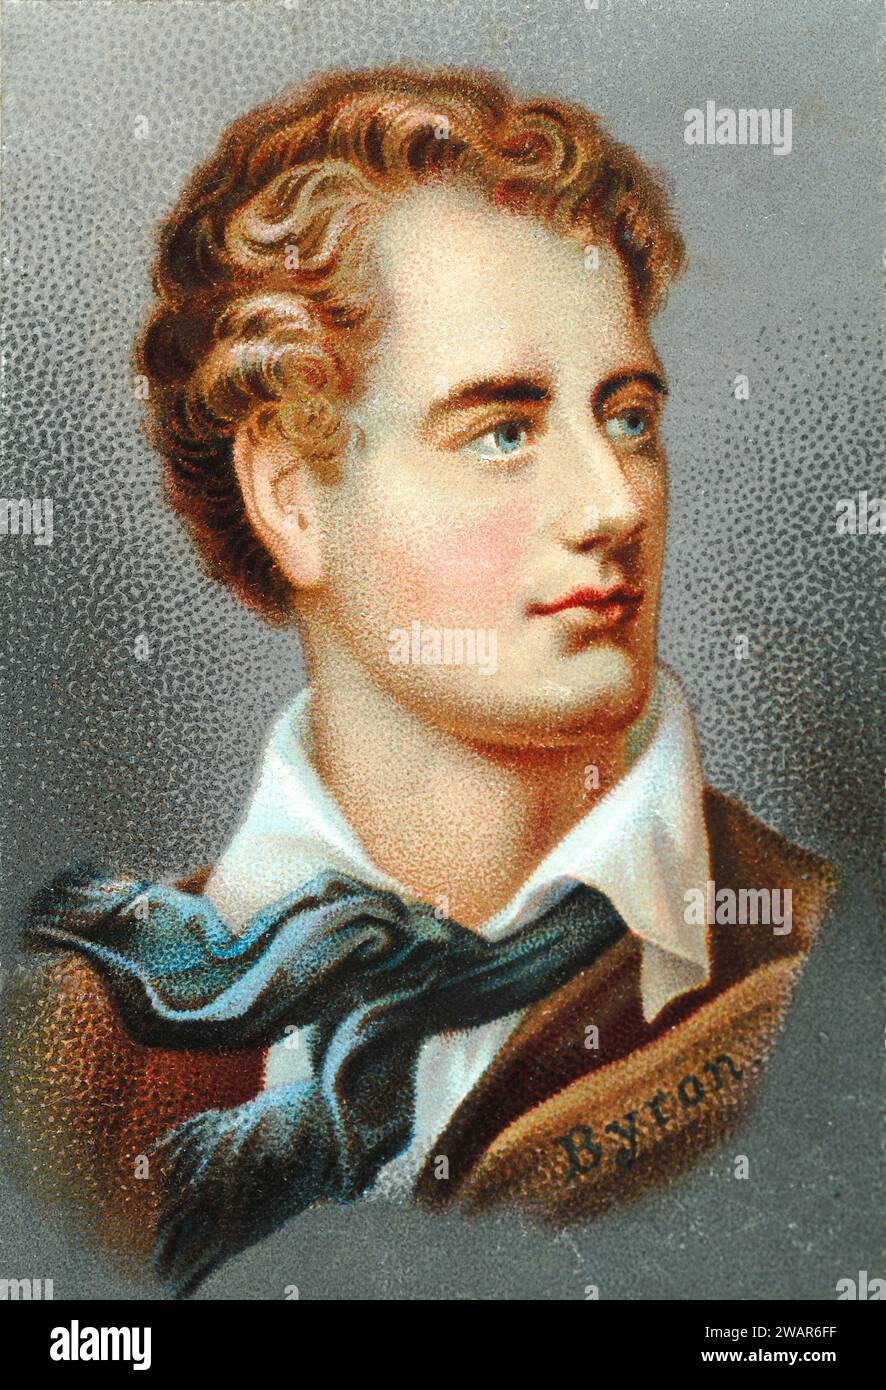 Portrait de Lord Byron (1788-1824), George Gordon Byron, 6e baron Byron, poète anglais et leader du mouvement romantique. c19 ème chromolithographie. Banque D'Images